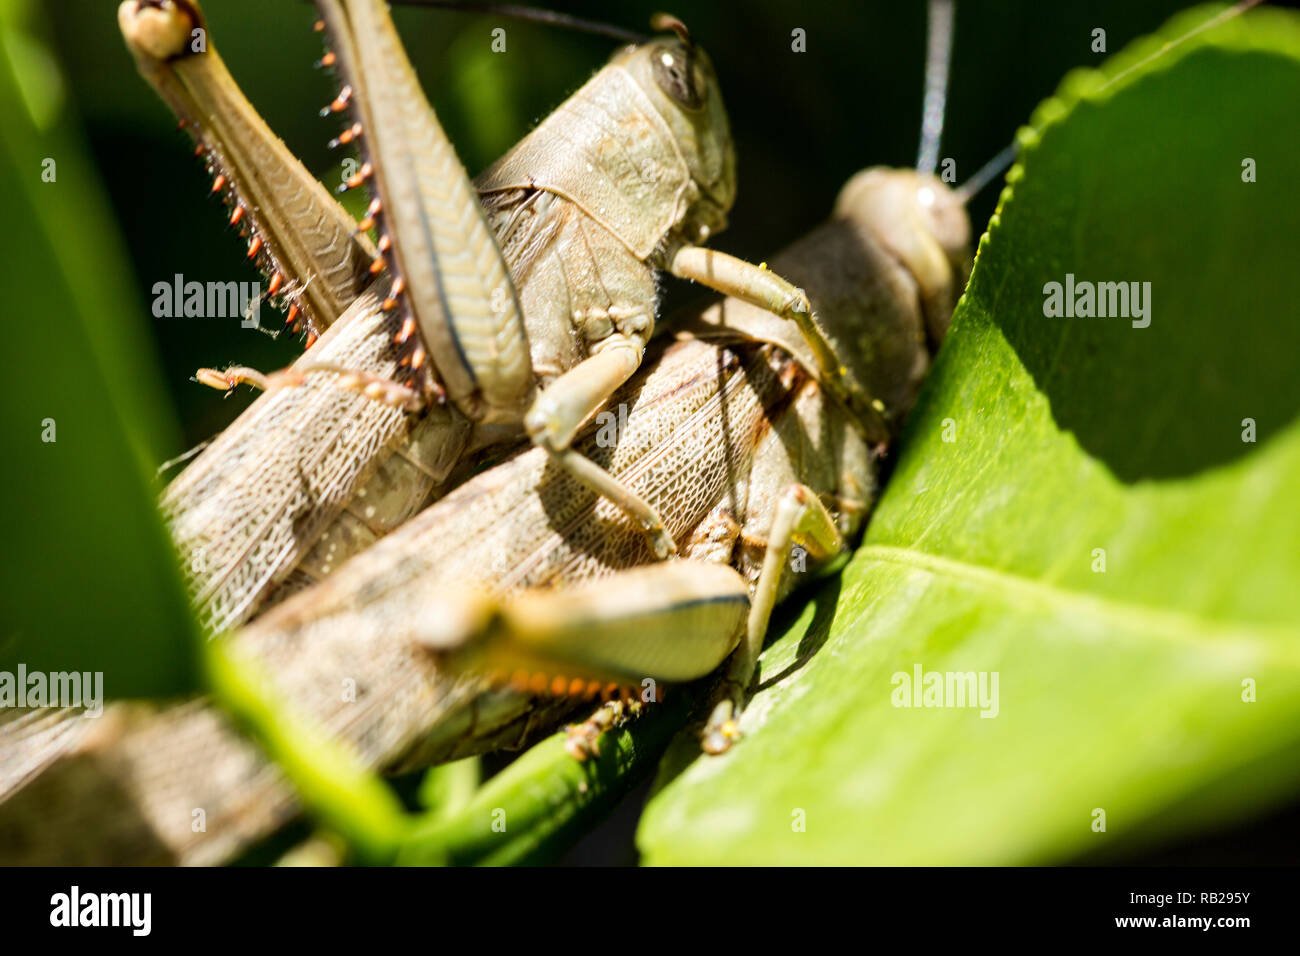 Hedge cavallette, Valanga irregularis, in una posizione di accoppiamento.  Il più piccolo insetto è il maschio ed è sulla parte superiore della  femmina o di insetto più grandi Foto stock - Alamy